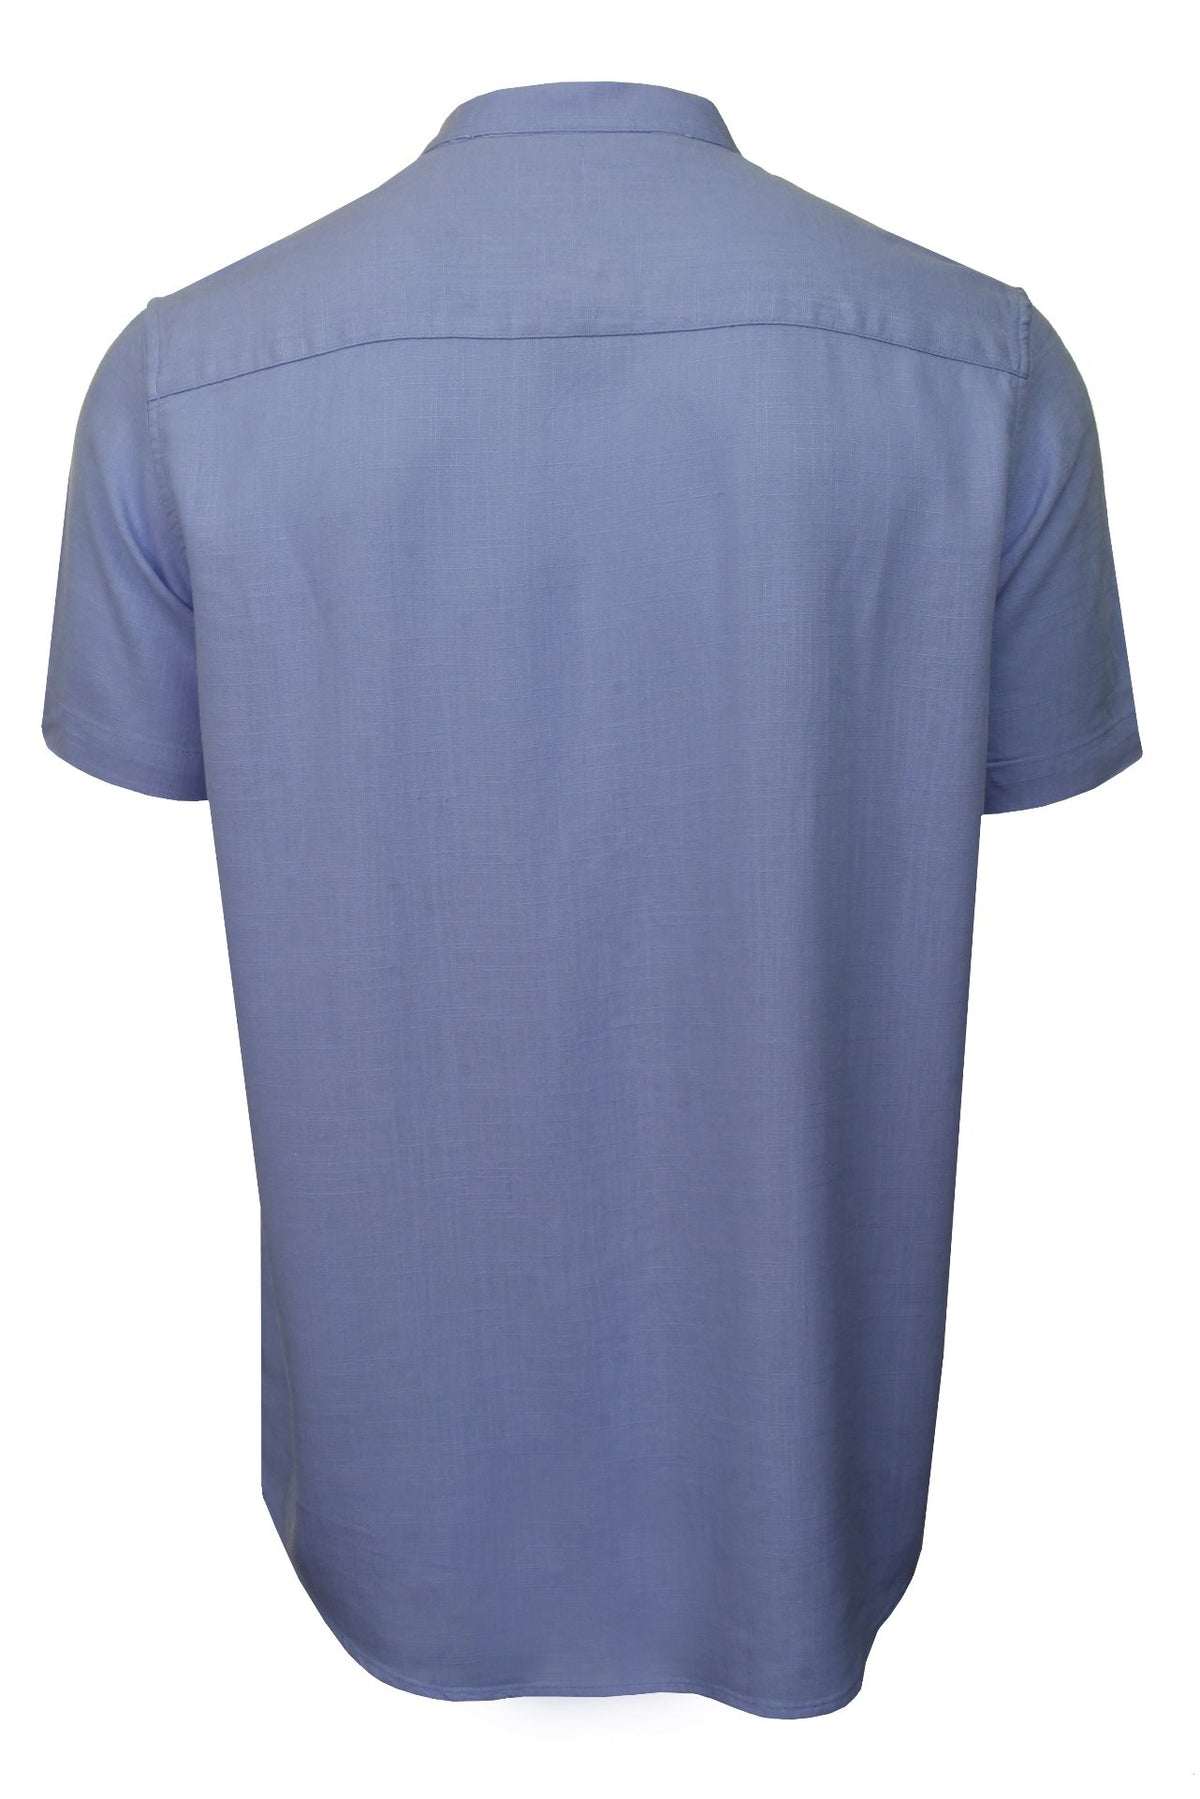 Brave Soul Mens 'Anglo' Linen Mix Grandad Shirt - Short Sleeved, 03, Msh-508Anglo, Light Blue